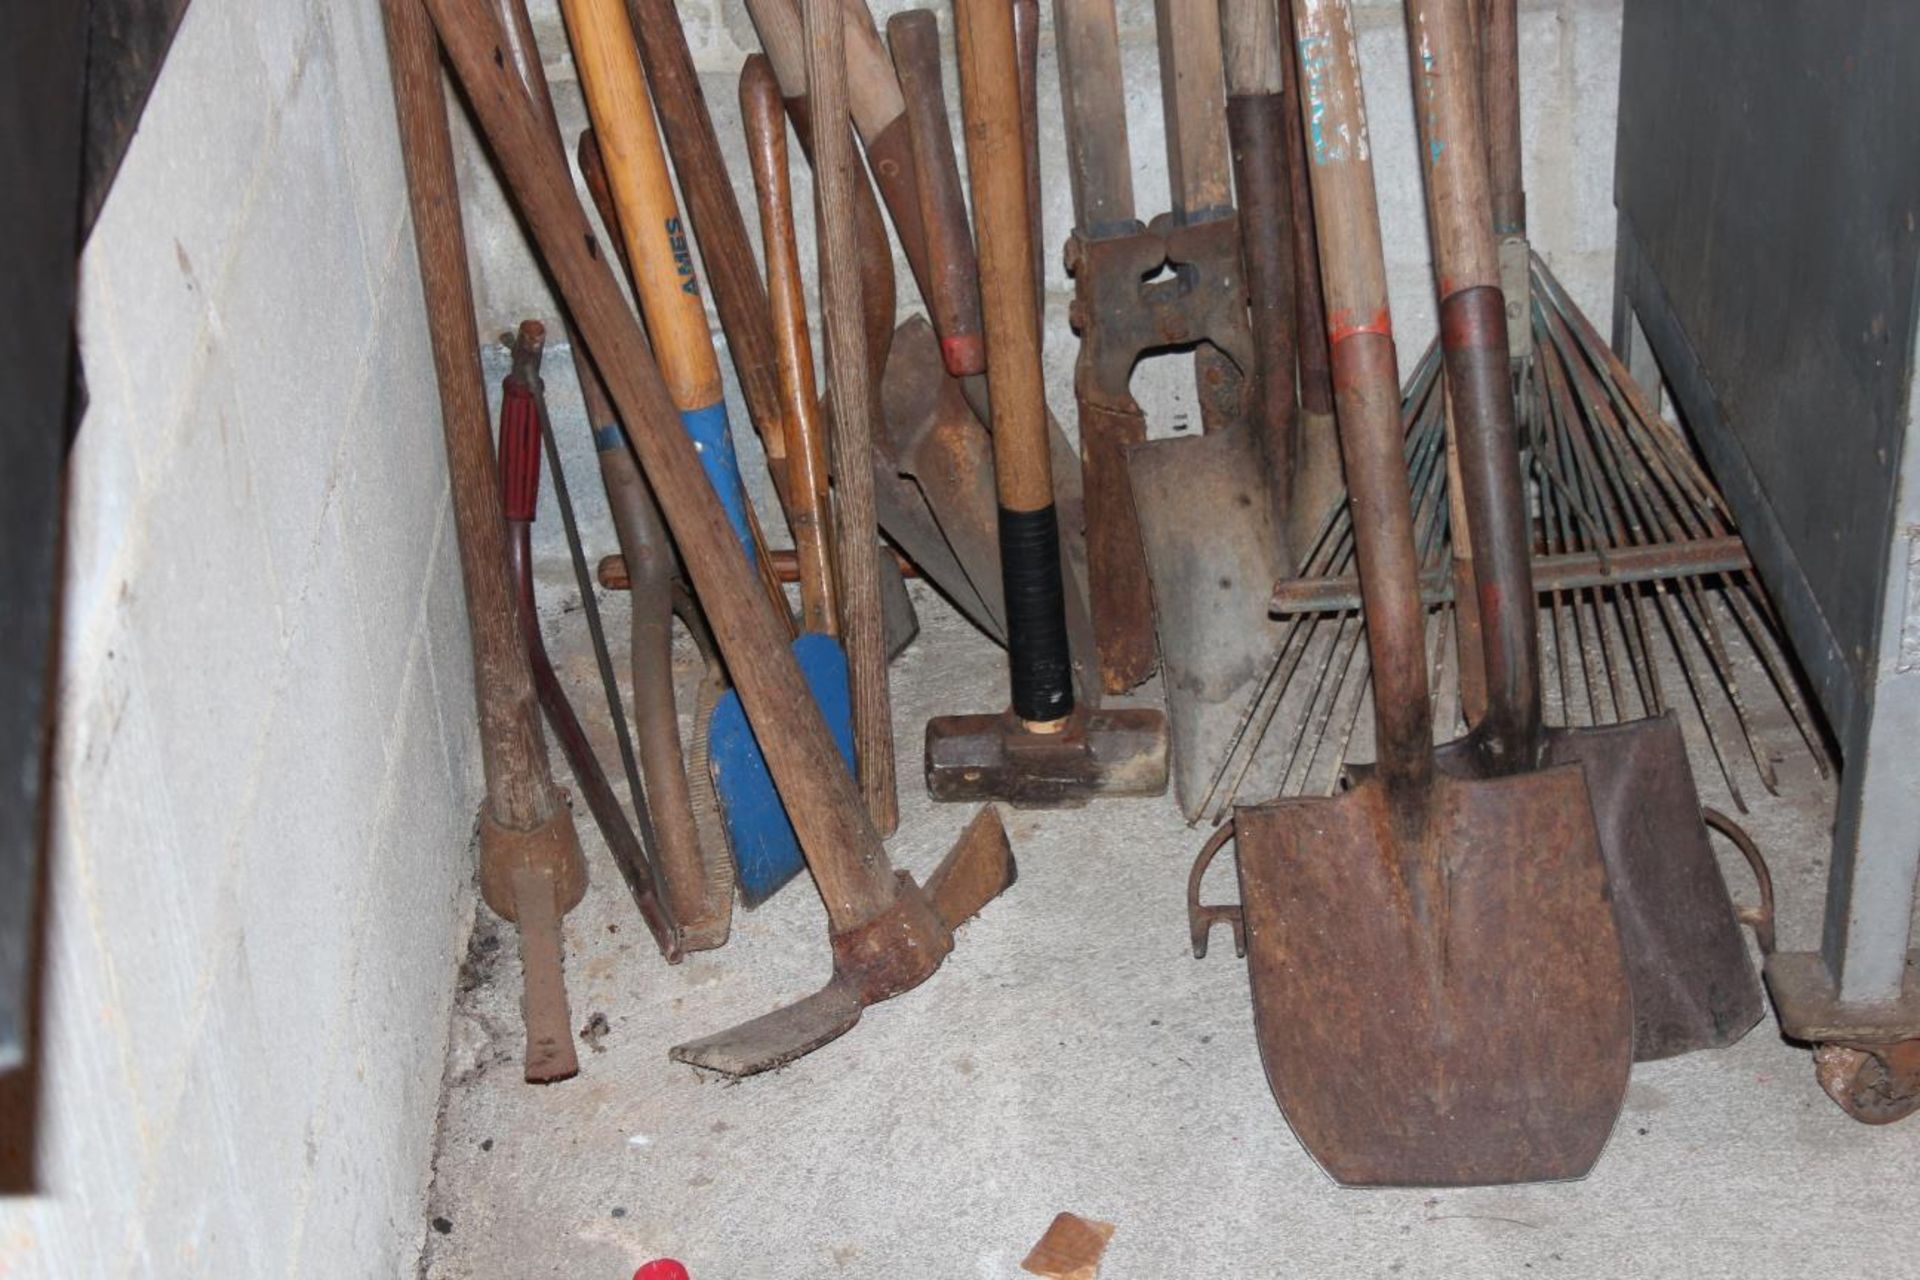 yard Tools(Shovels, Hoes, Picks, Rakes) - Image 2 of 2